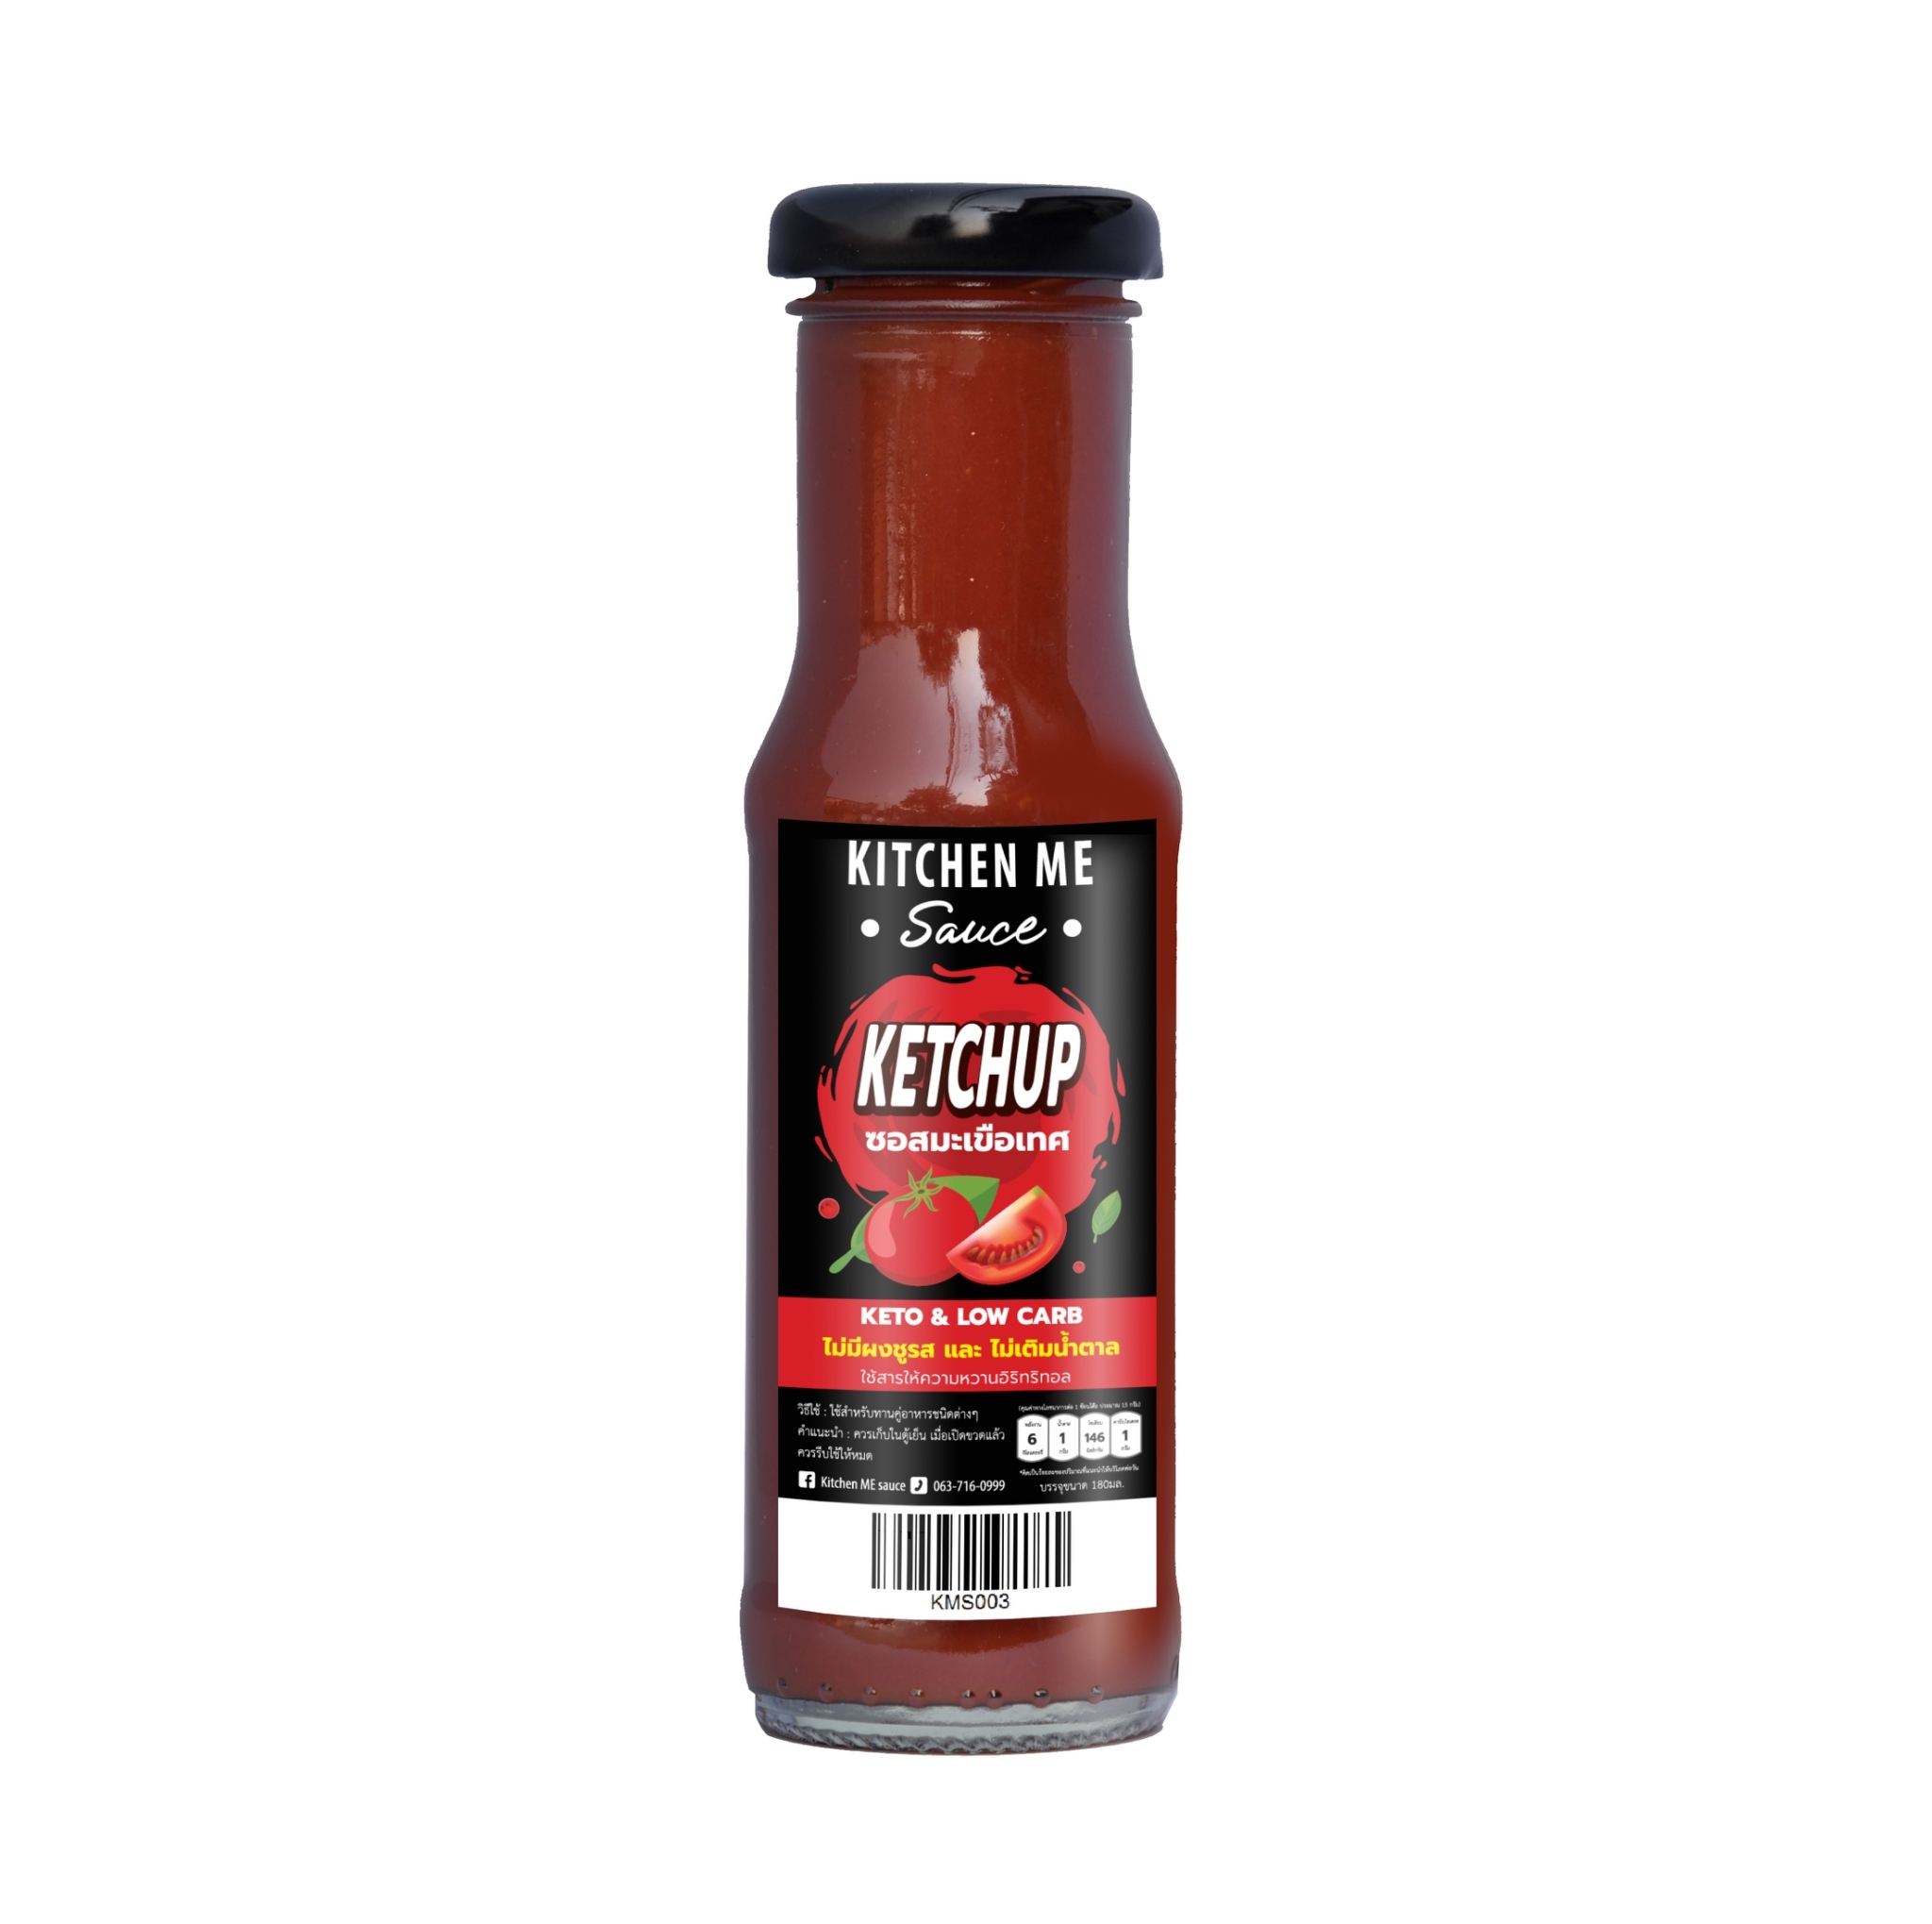 ซอสมะเขือเทศคีโต  Ketchup - Kitchen me sauce